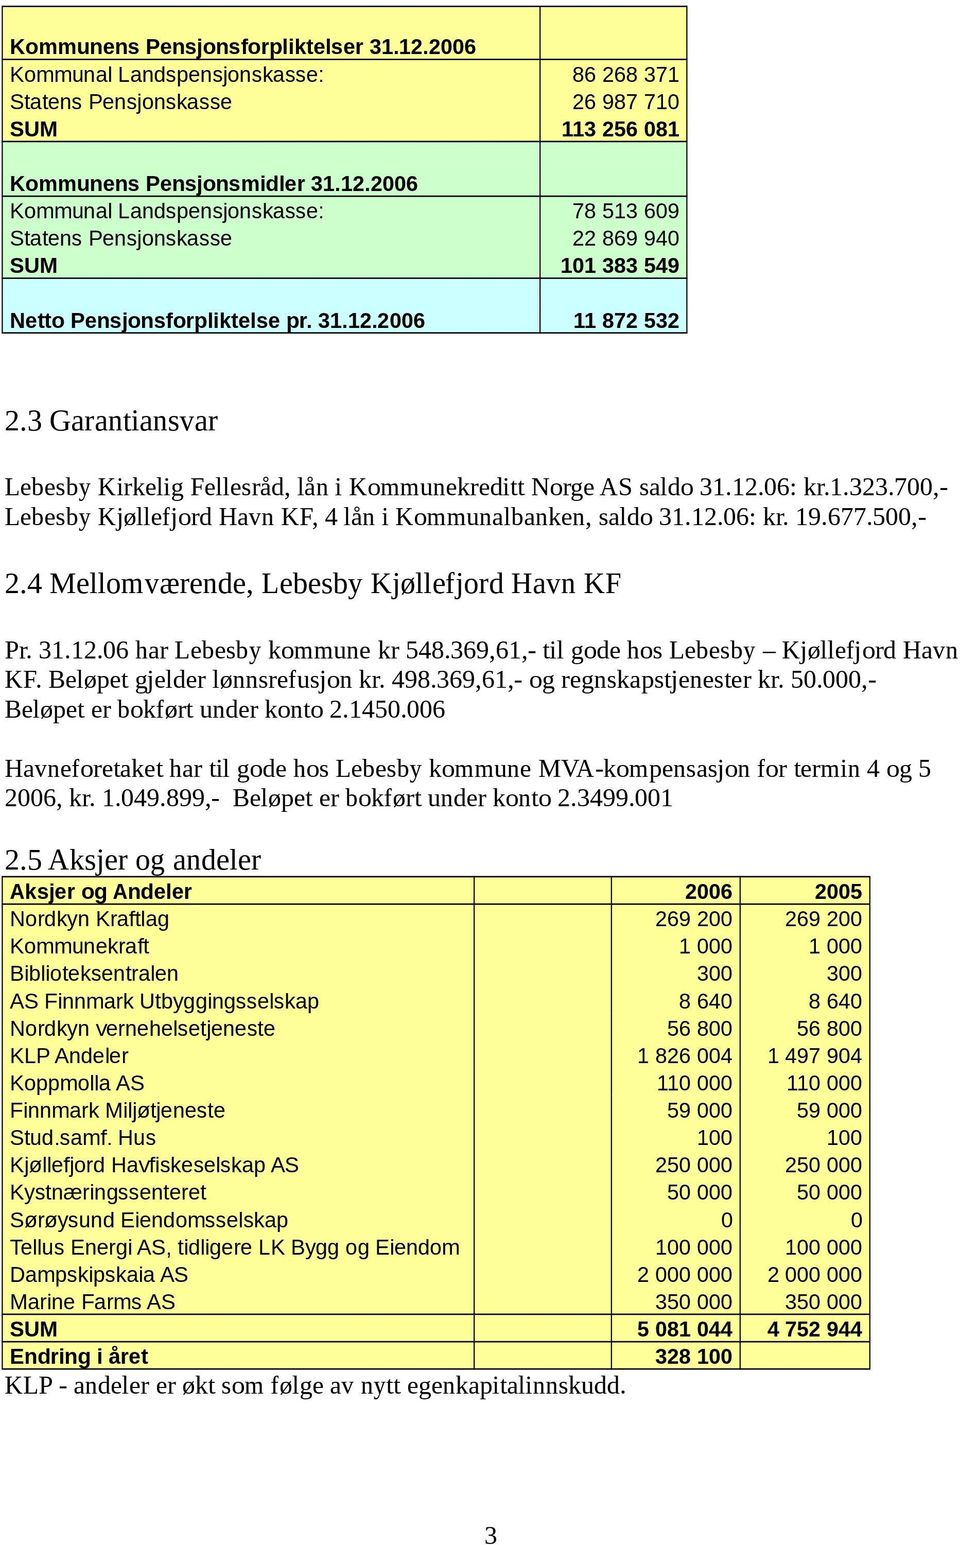 677.5,- 2.4 Mellomværende, Lebesby Kjøllefjord Havn KF Pr. 31.12.6 har Lebesby kommune kr 548.369,61,- til gode hos Lebesby Kjøllefjord Havn KF. Beløpet gjelder lønnsrefusjon kr. 498.